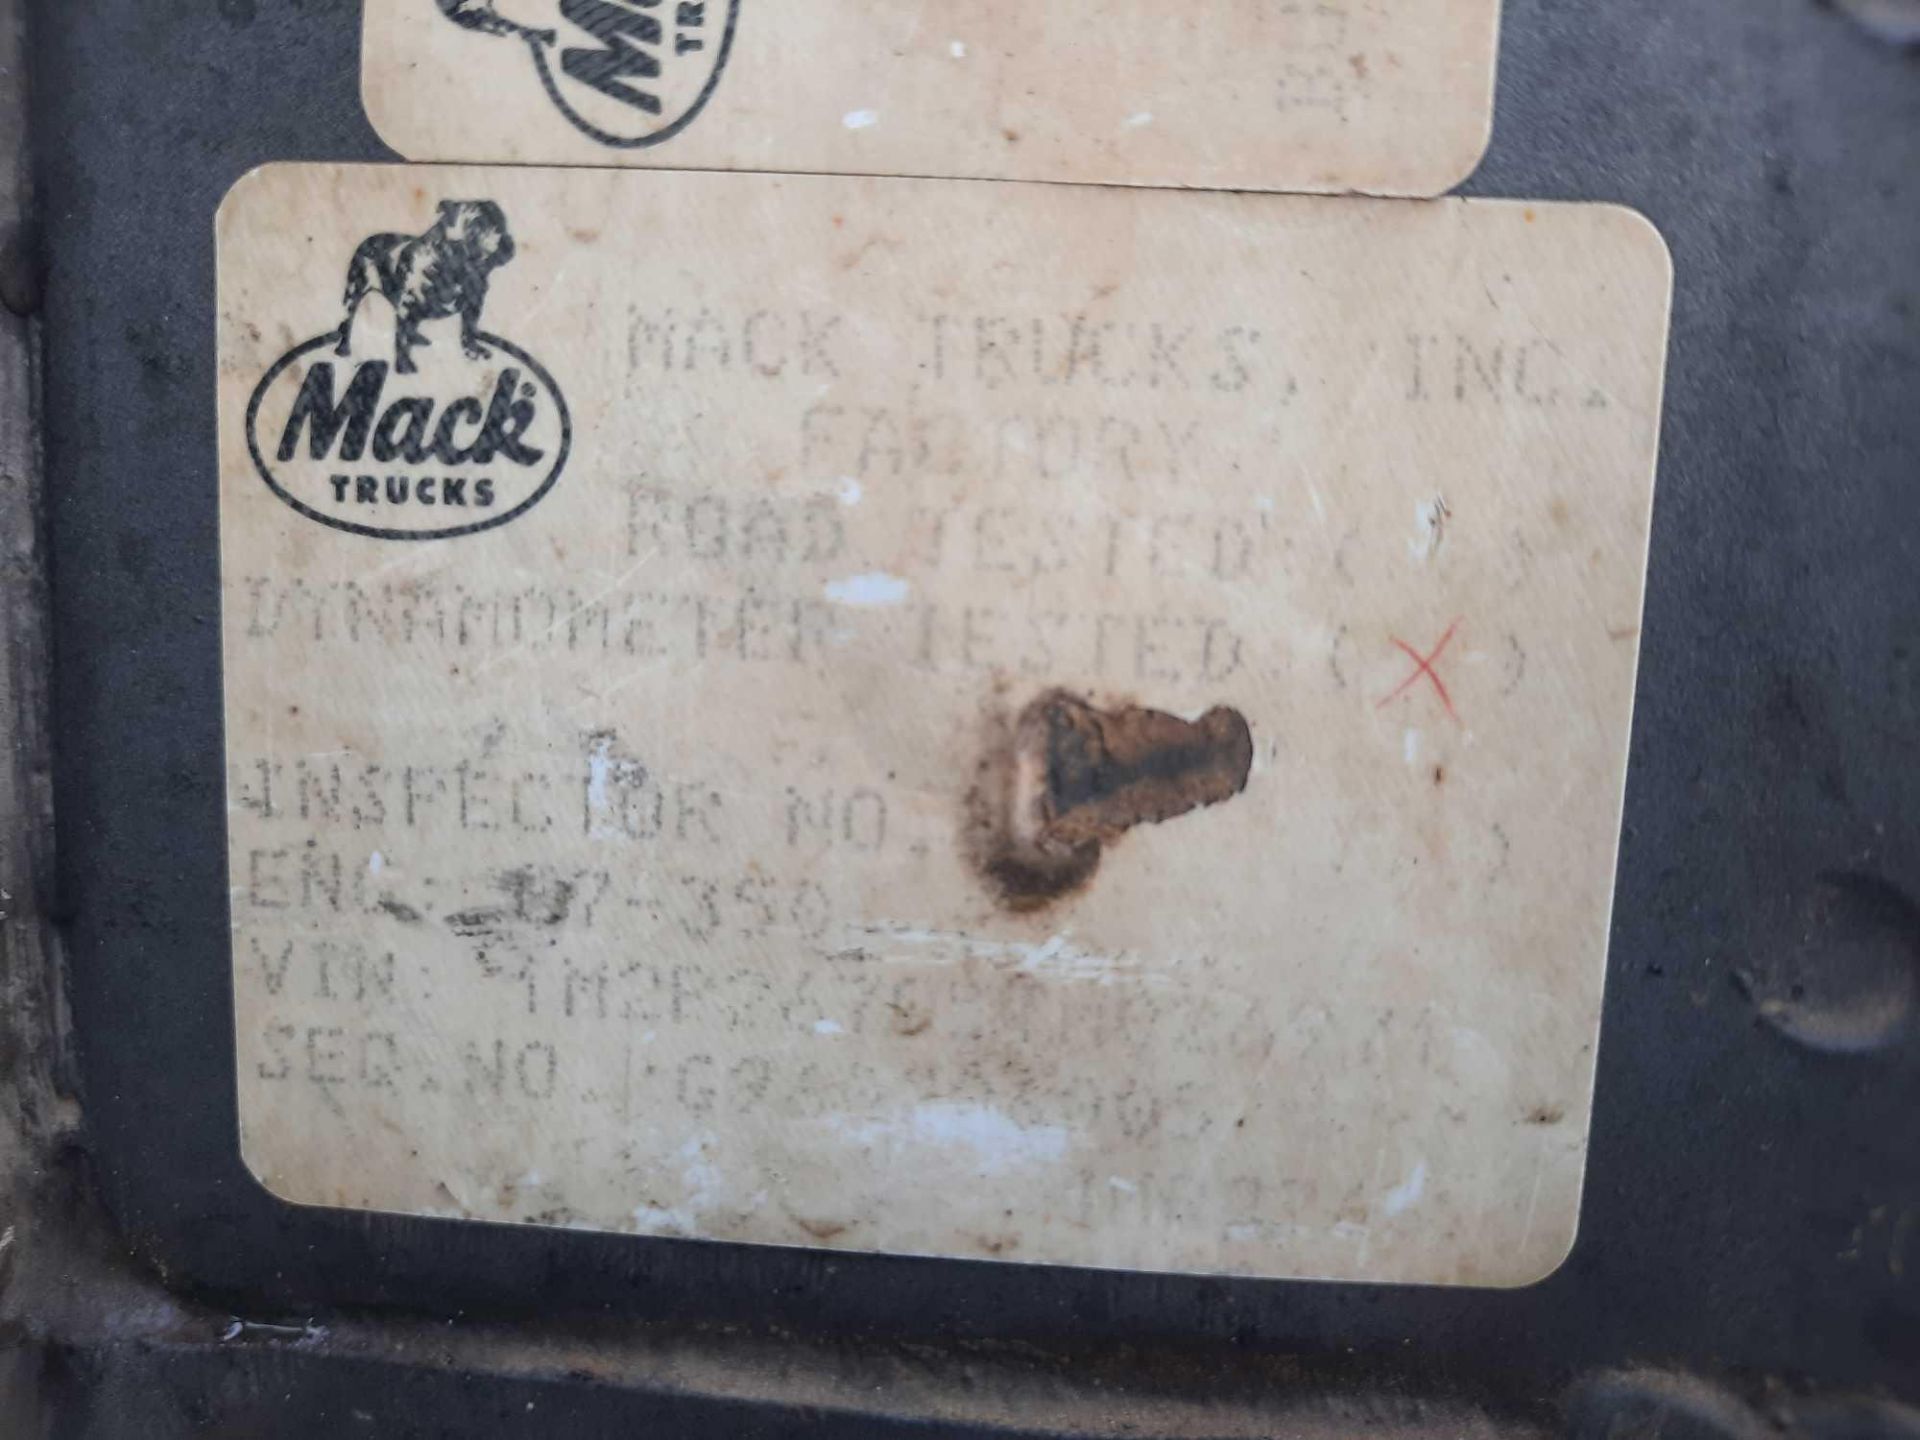 1996 Mack T/A Dump Truck - Image 9 of 38